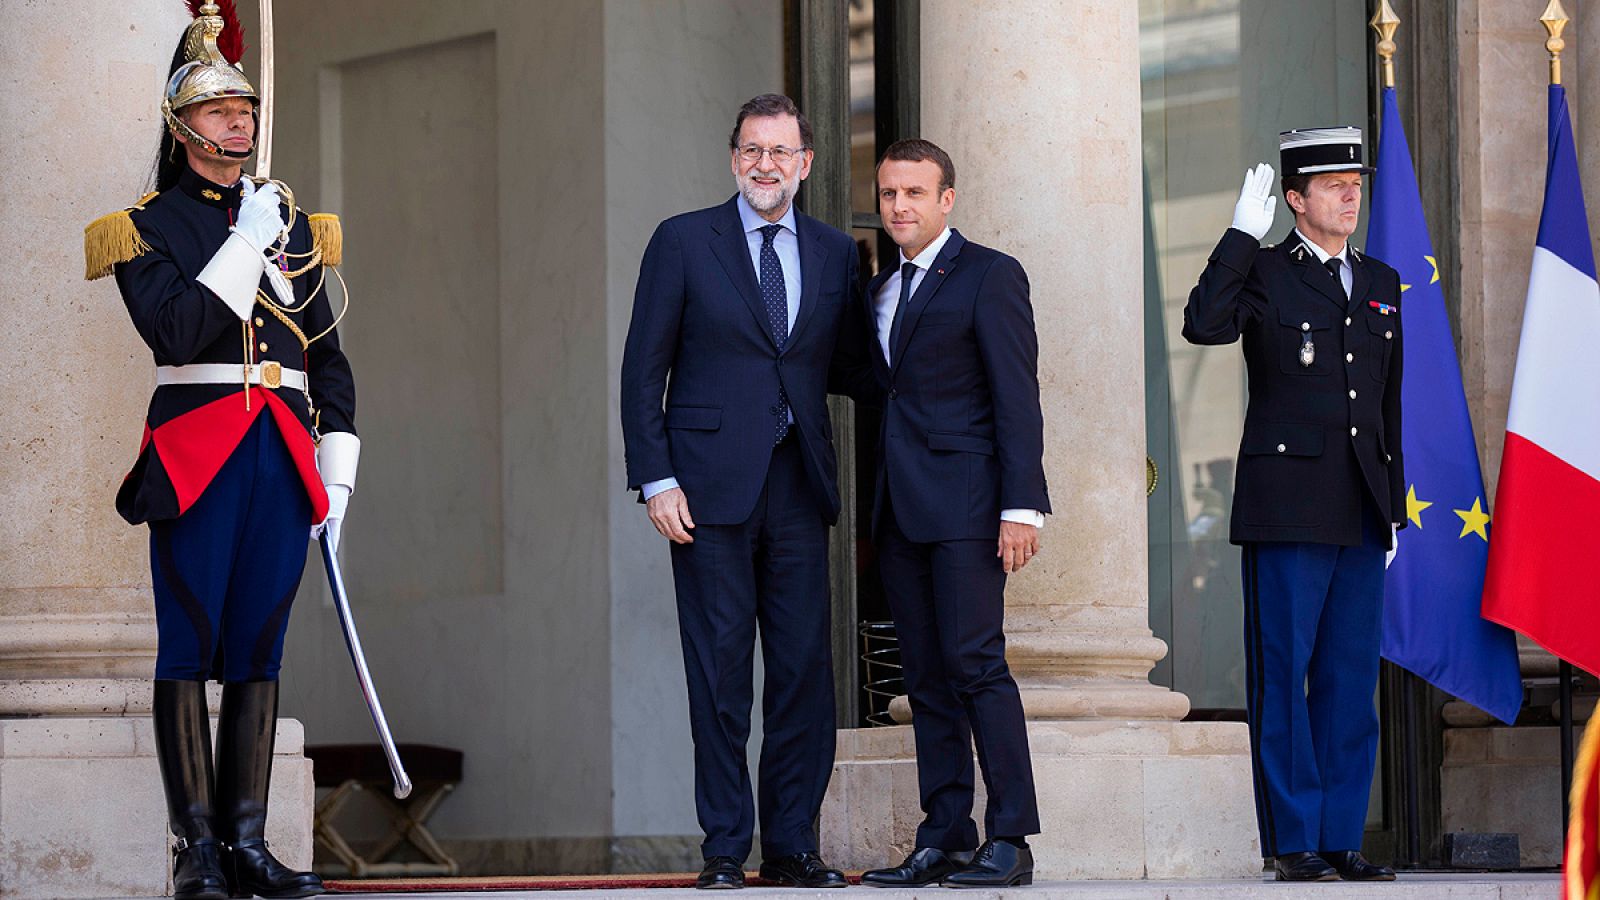 El presidente francés, Emmanuel Macron, recibe al jefe del Gobierno español, Mariano Rajoy, en el Palacio del Elíseo